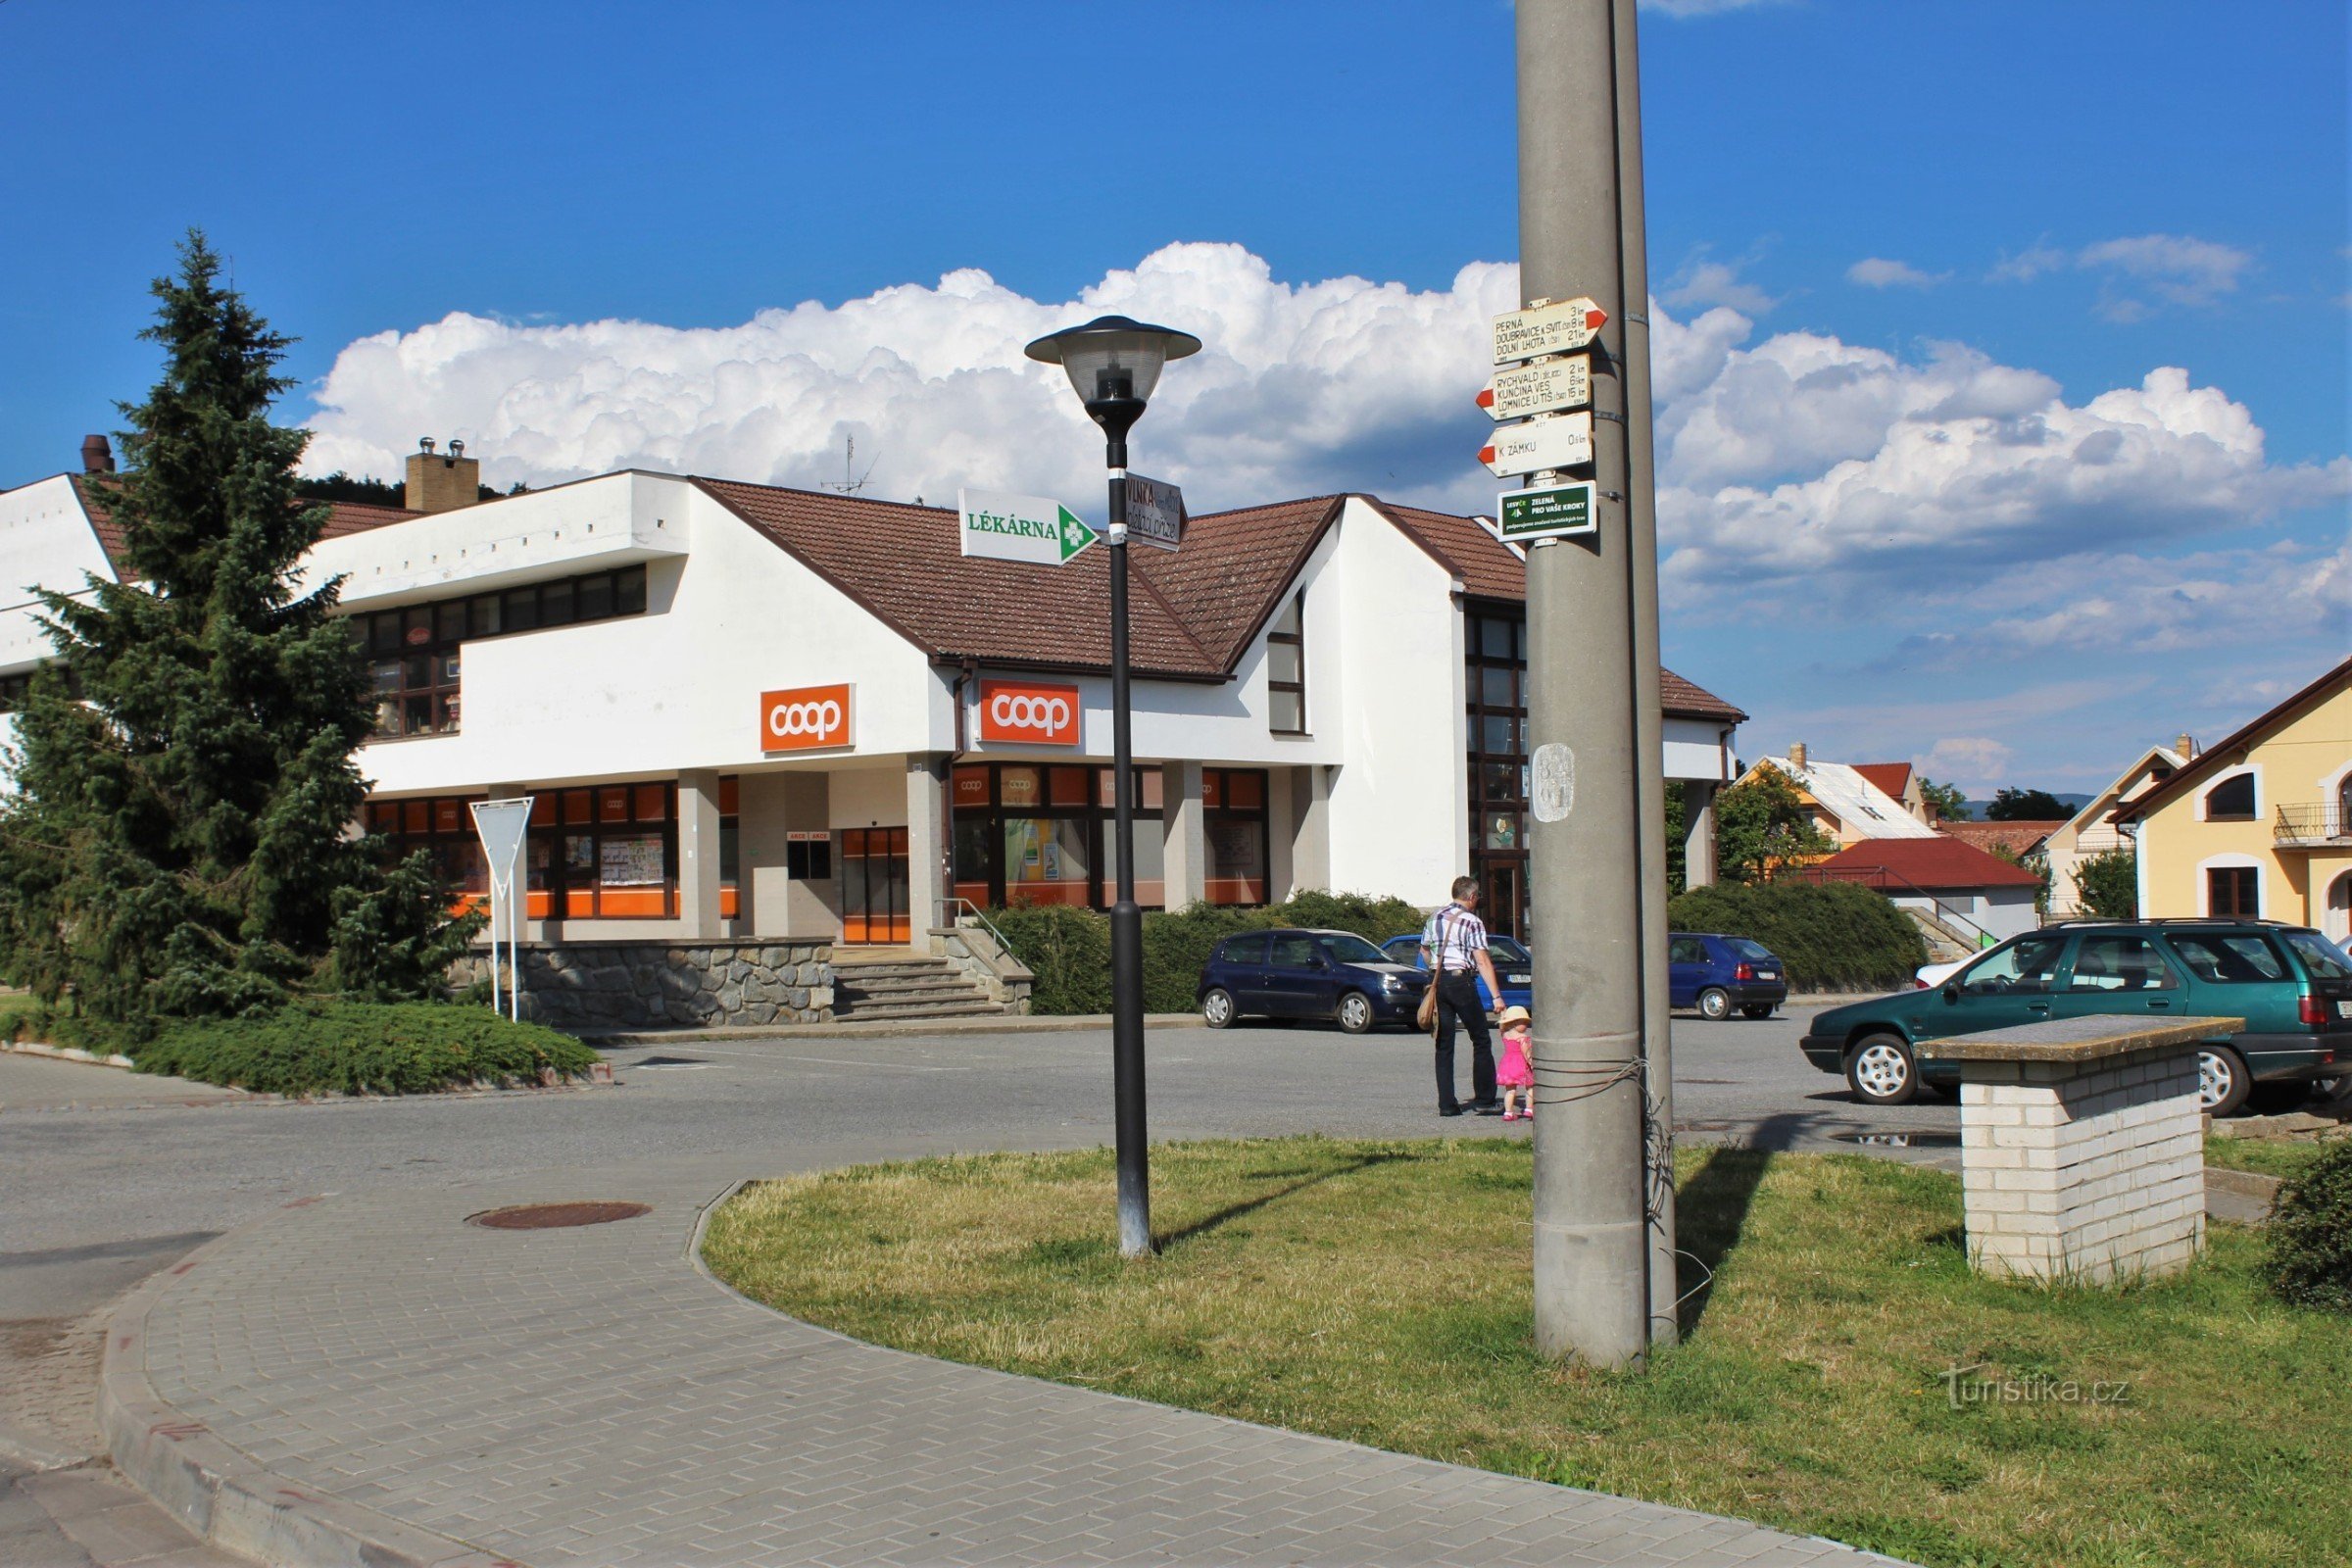 The tourist crossroads is located on Comenské náměstí